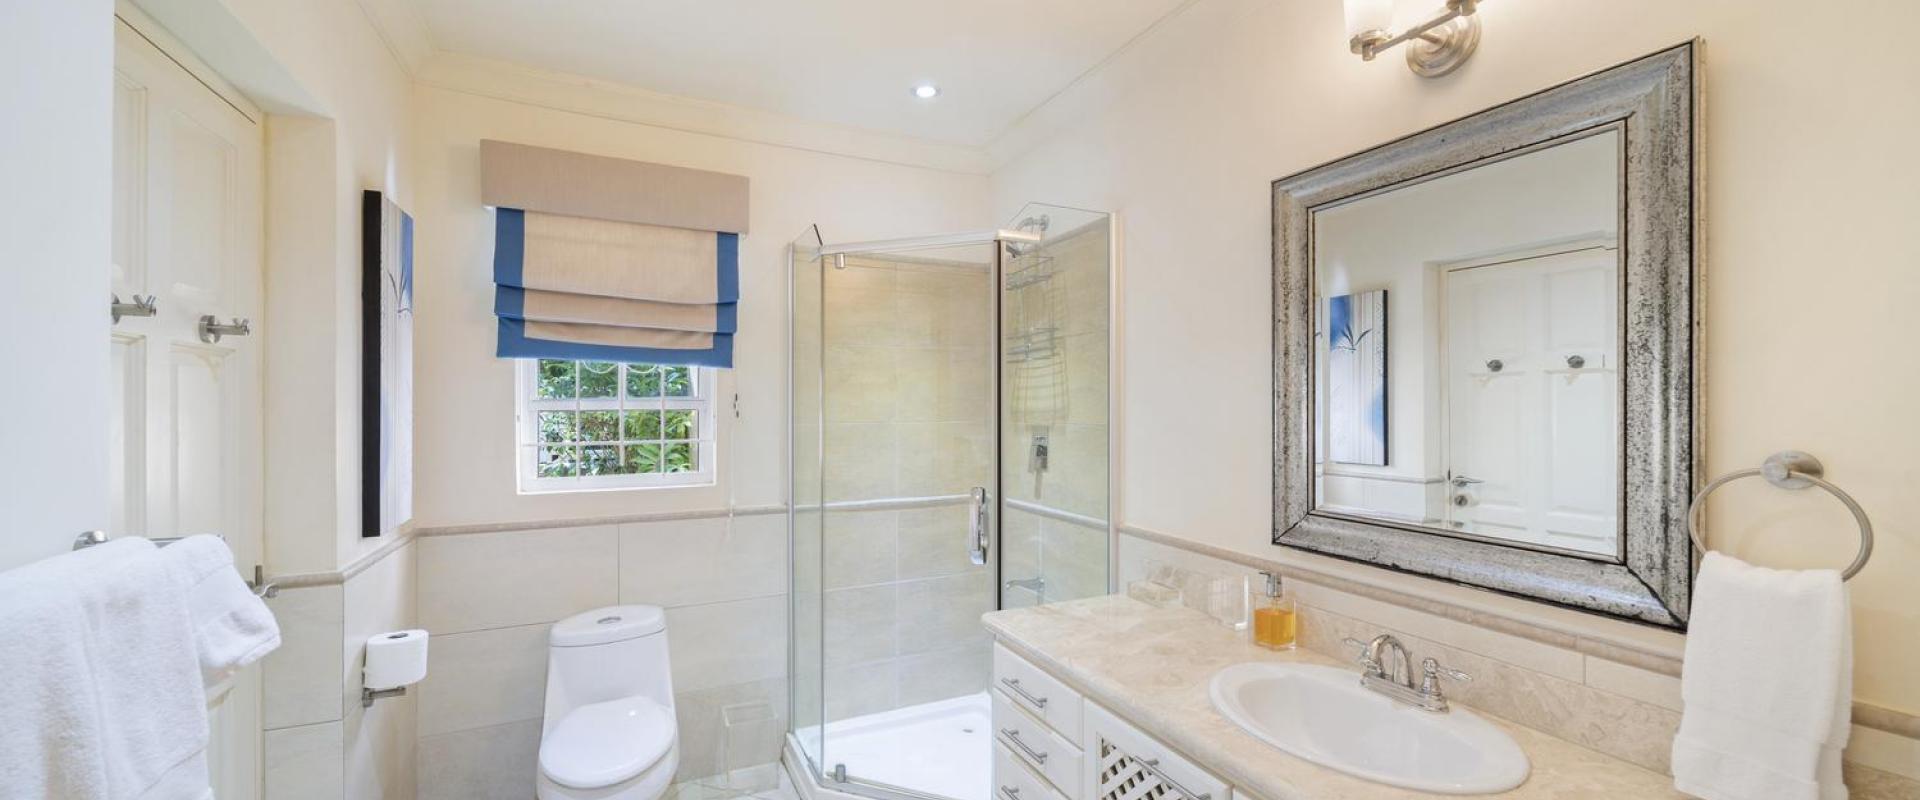 Tara Barbados 4 Bedroom Holiday Rental Villa Bathroom Two